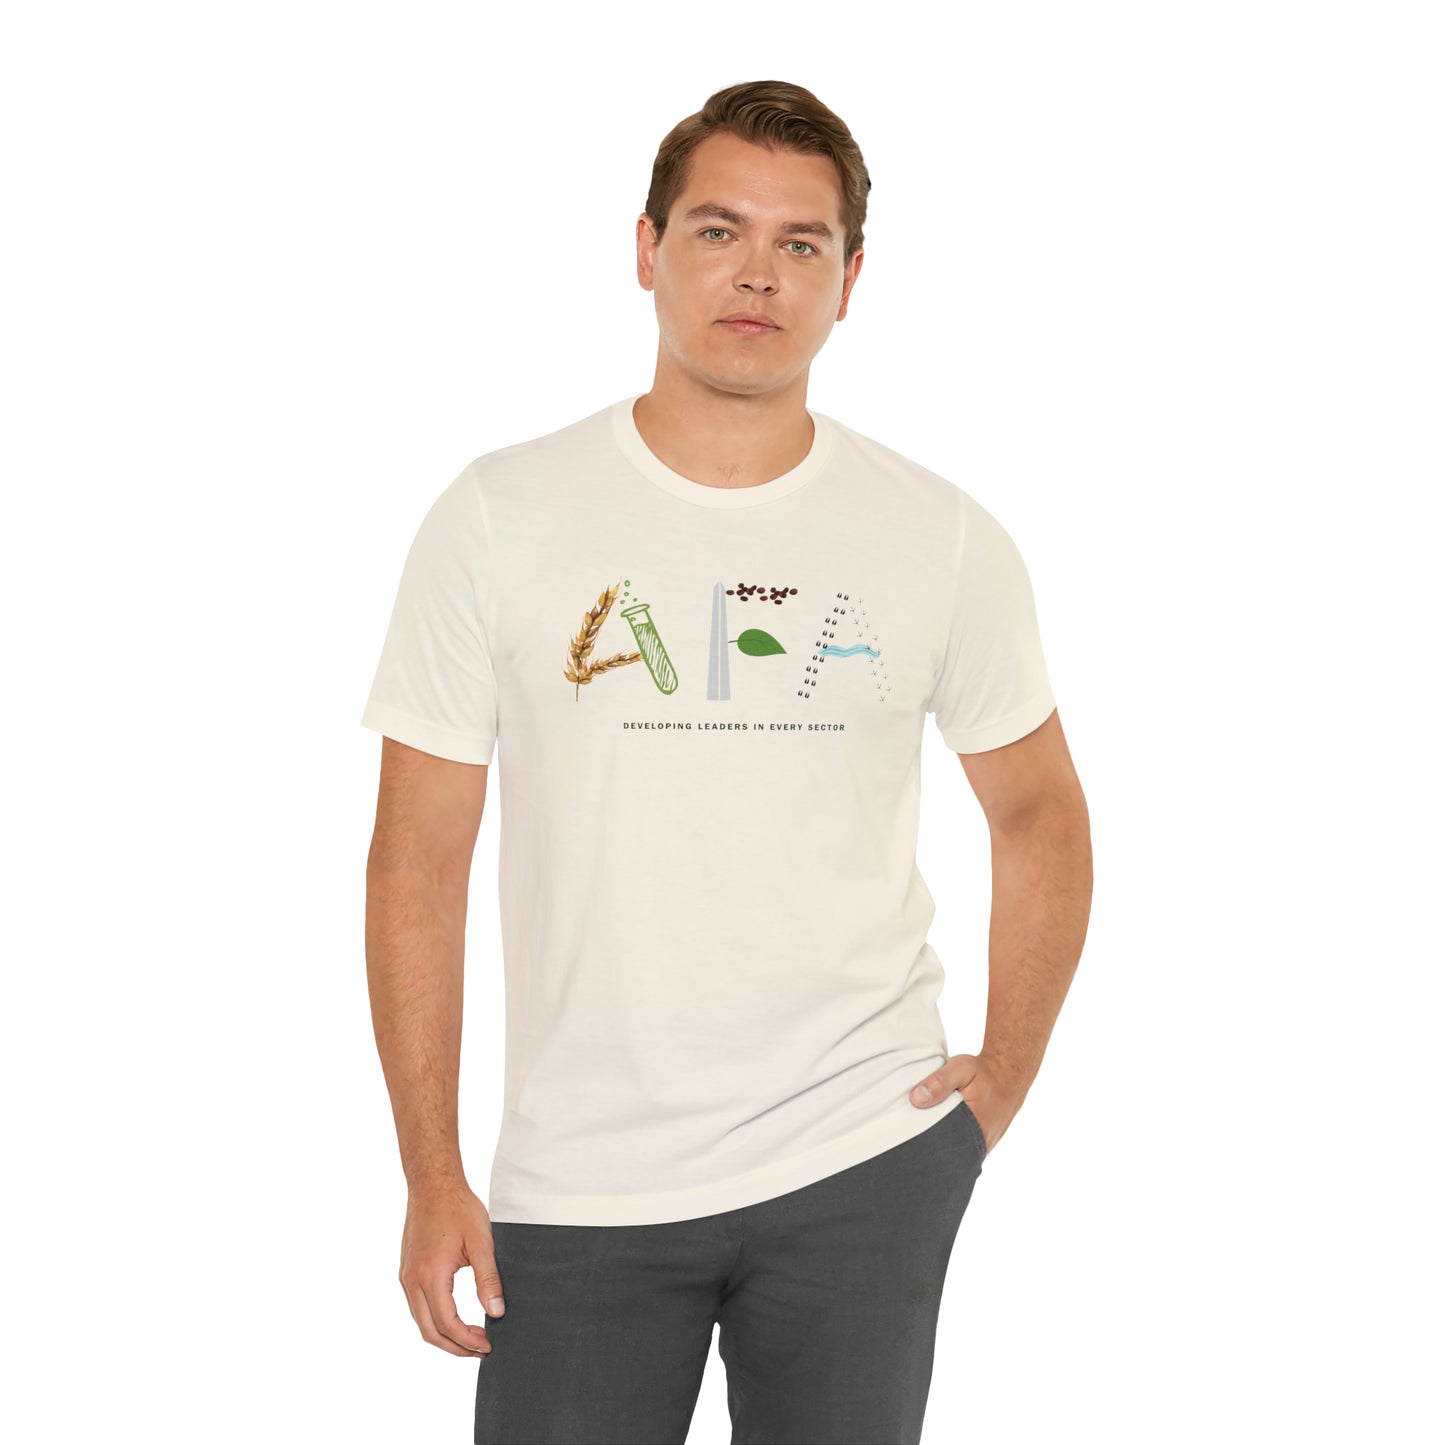 Special Edition AFA Staff Designed Shirt